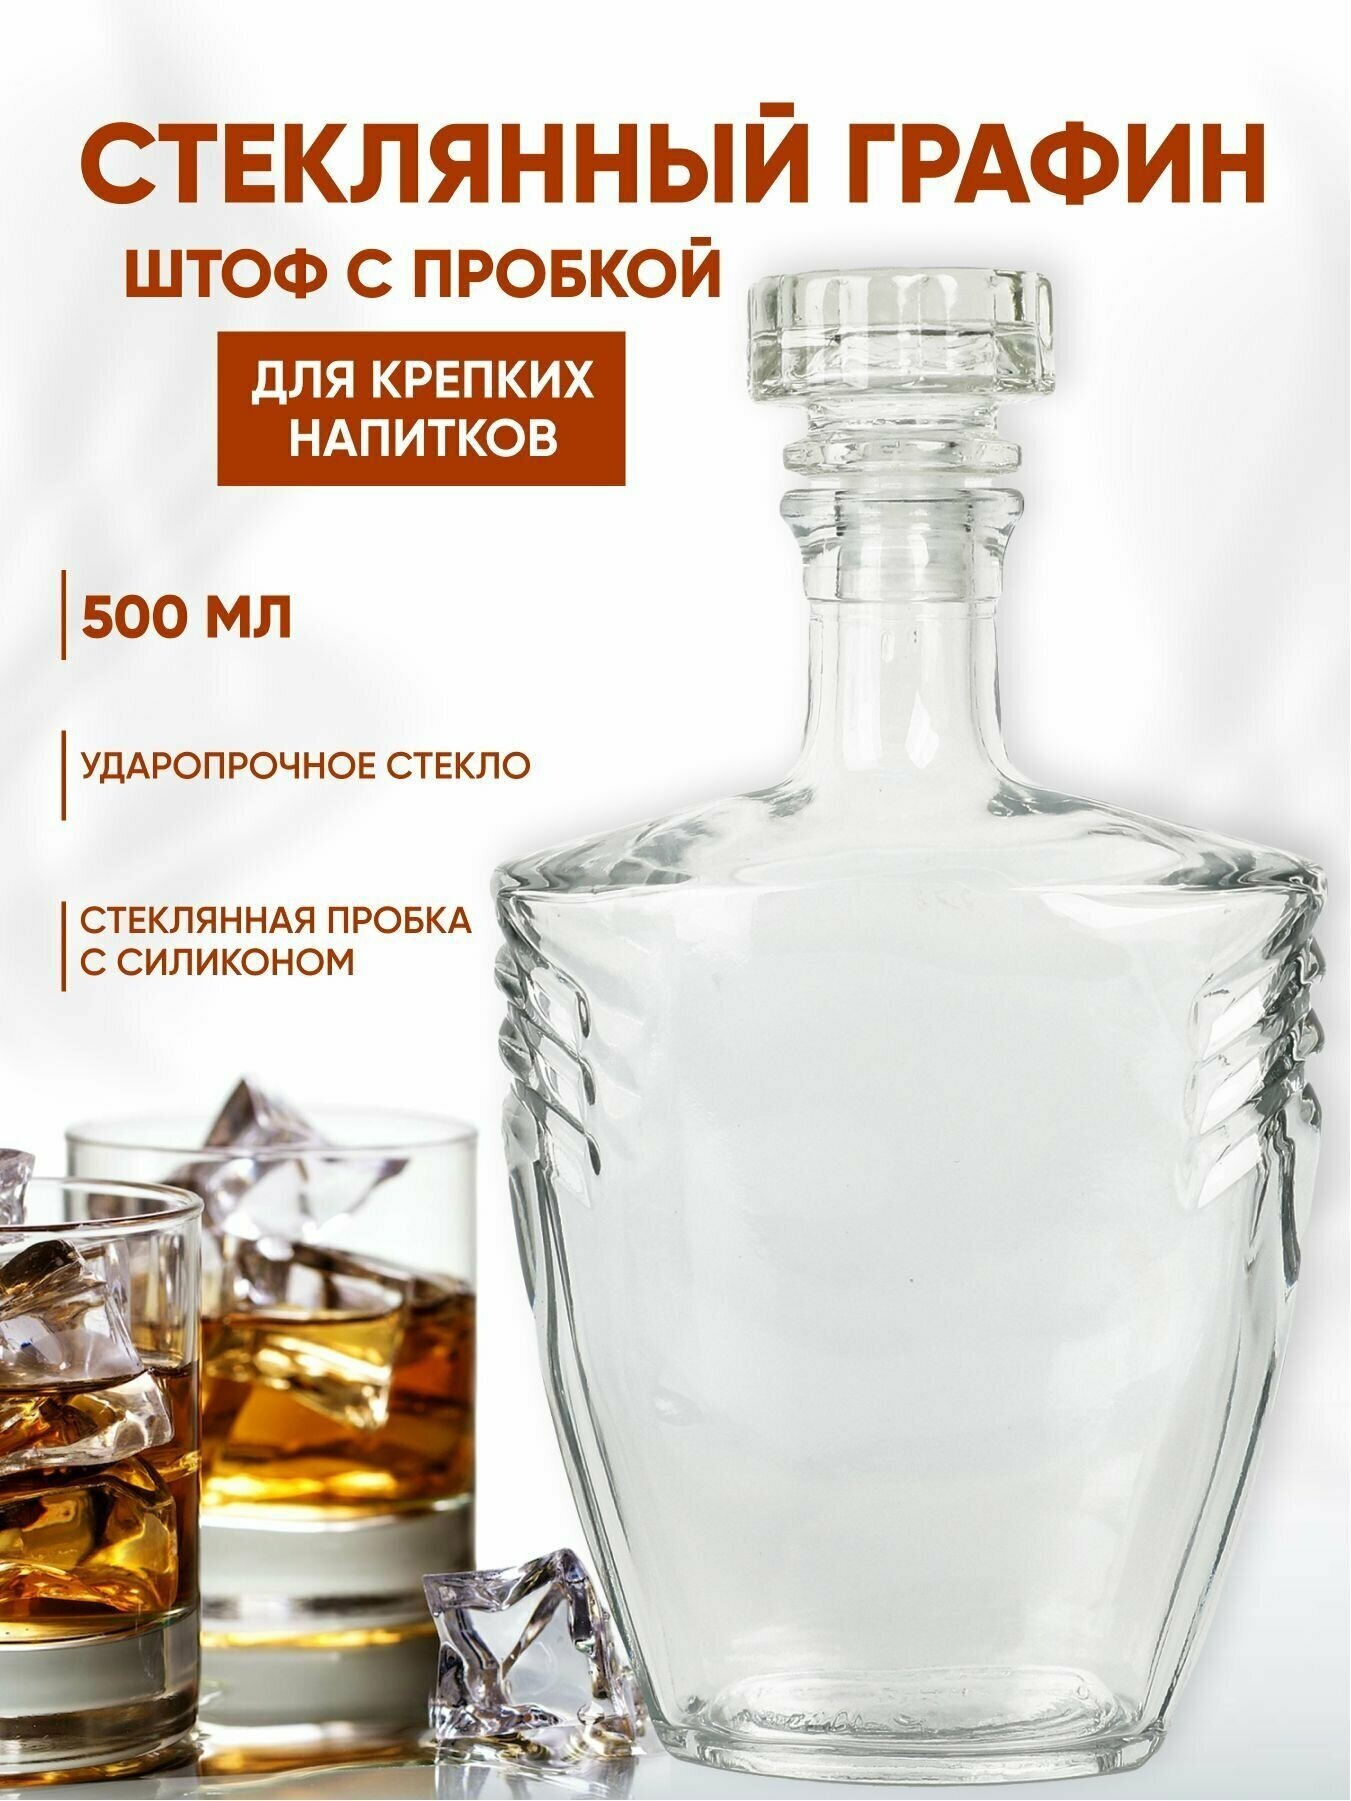 Графин для крепких напитков виски водки стеклянный 500 мл